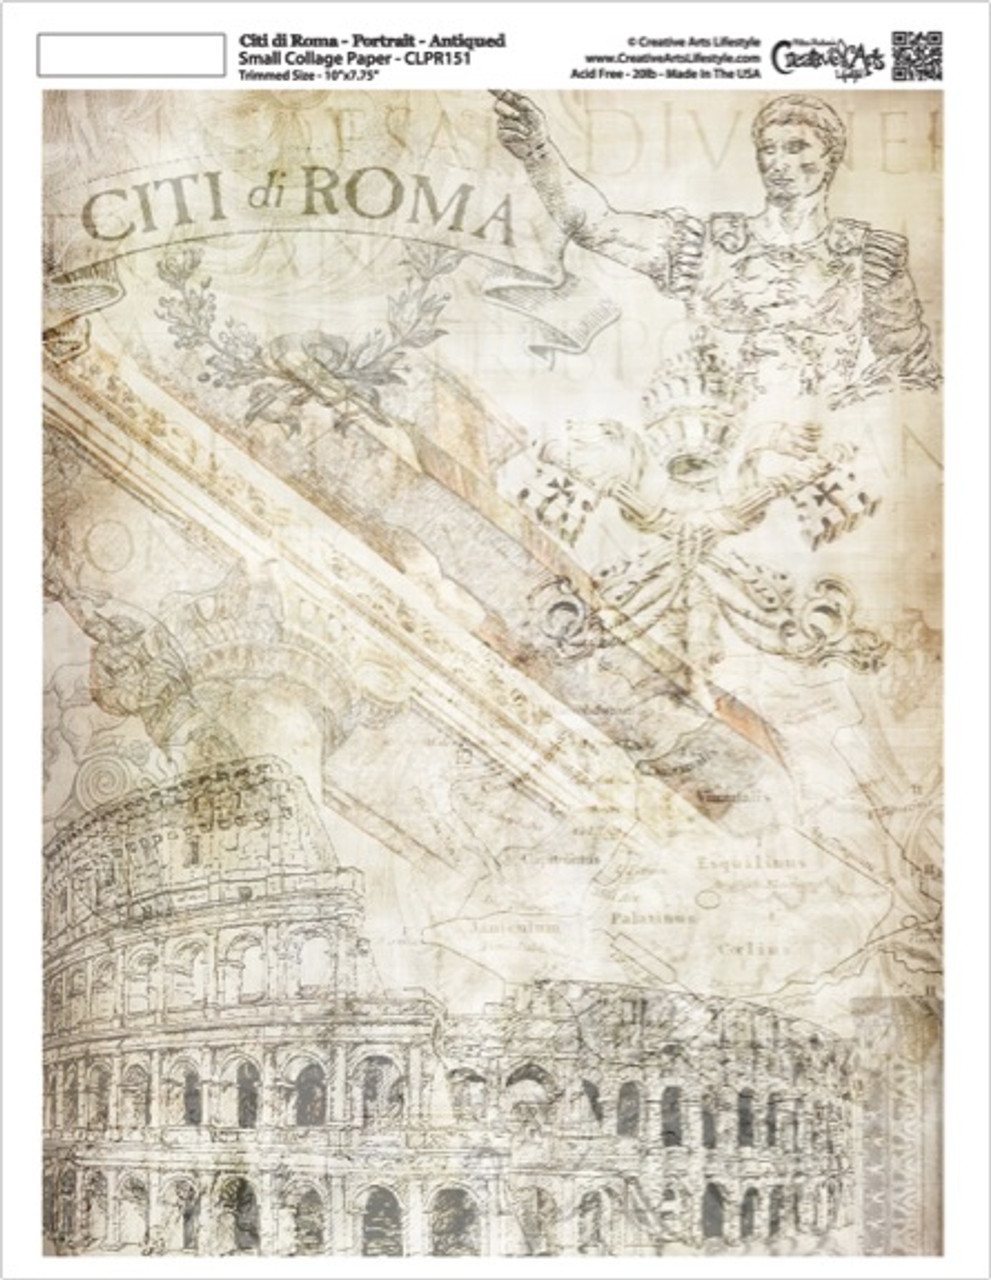 Citi di Roma Collage Paper - Portrait - Antique - 7.75" x 10"